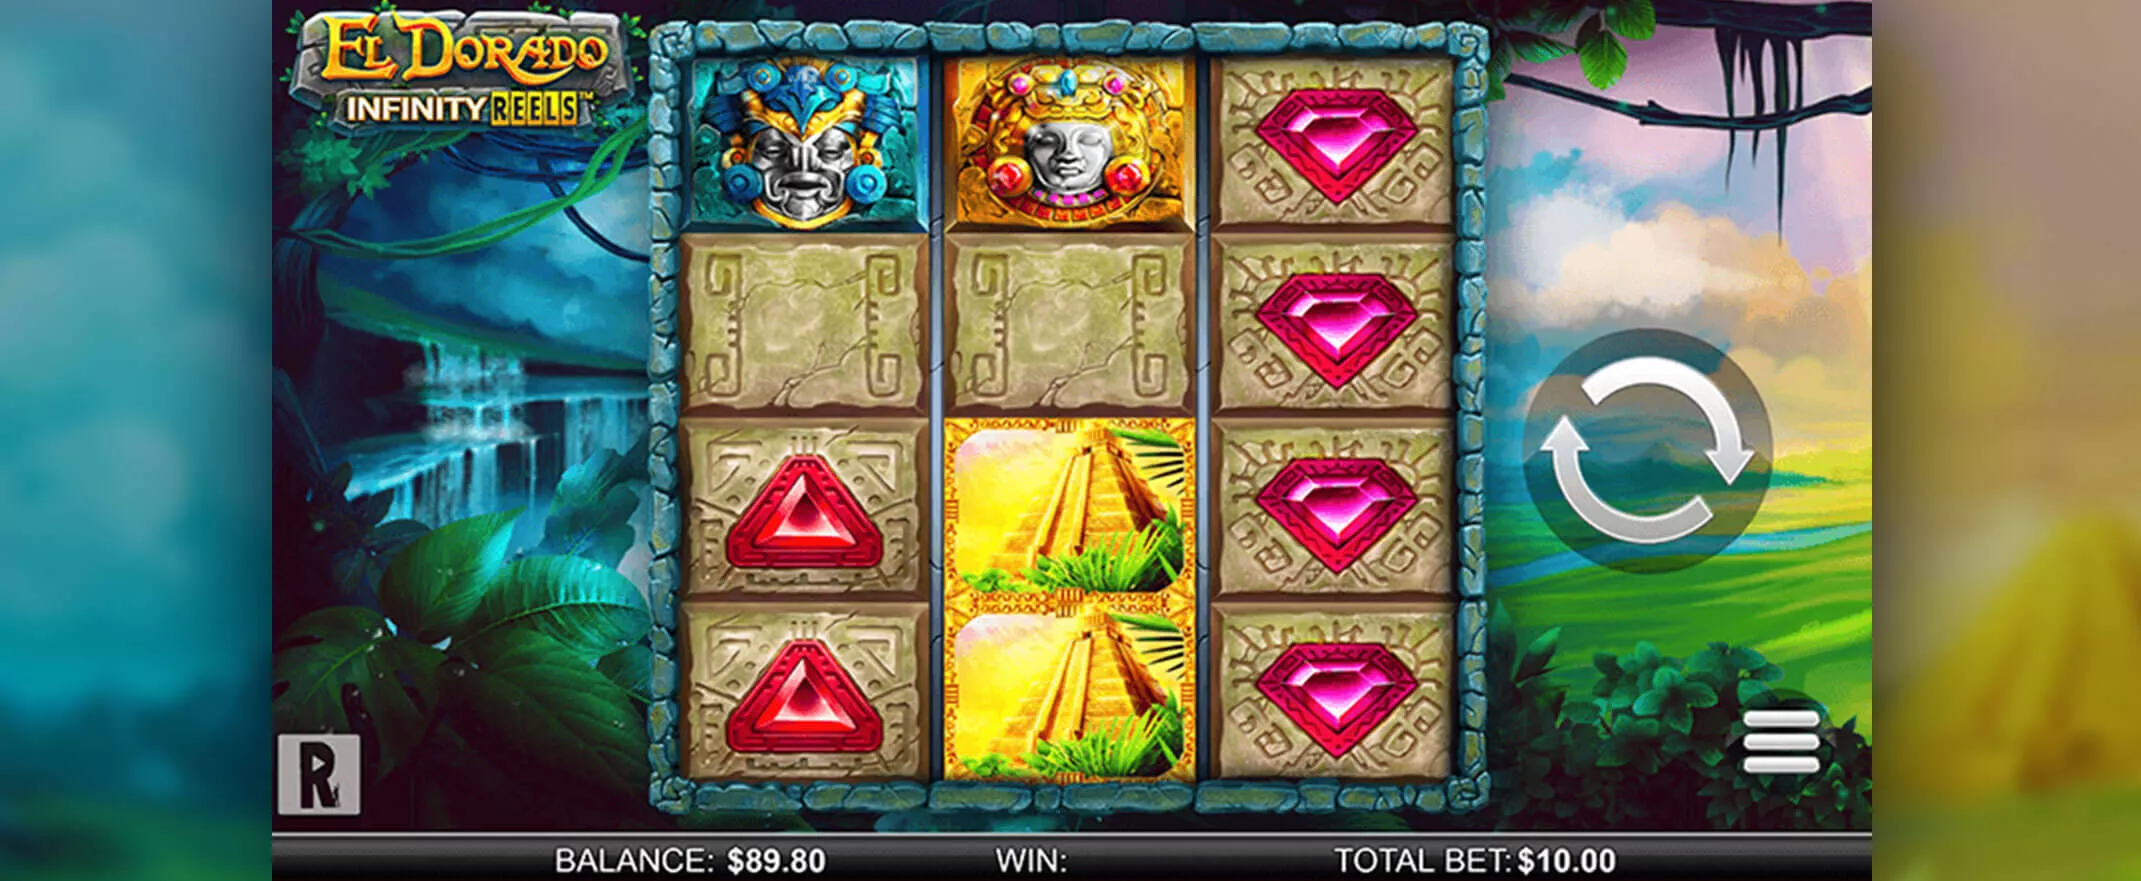 El Dorado Infinity Reels slot screenshot